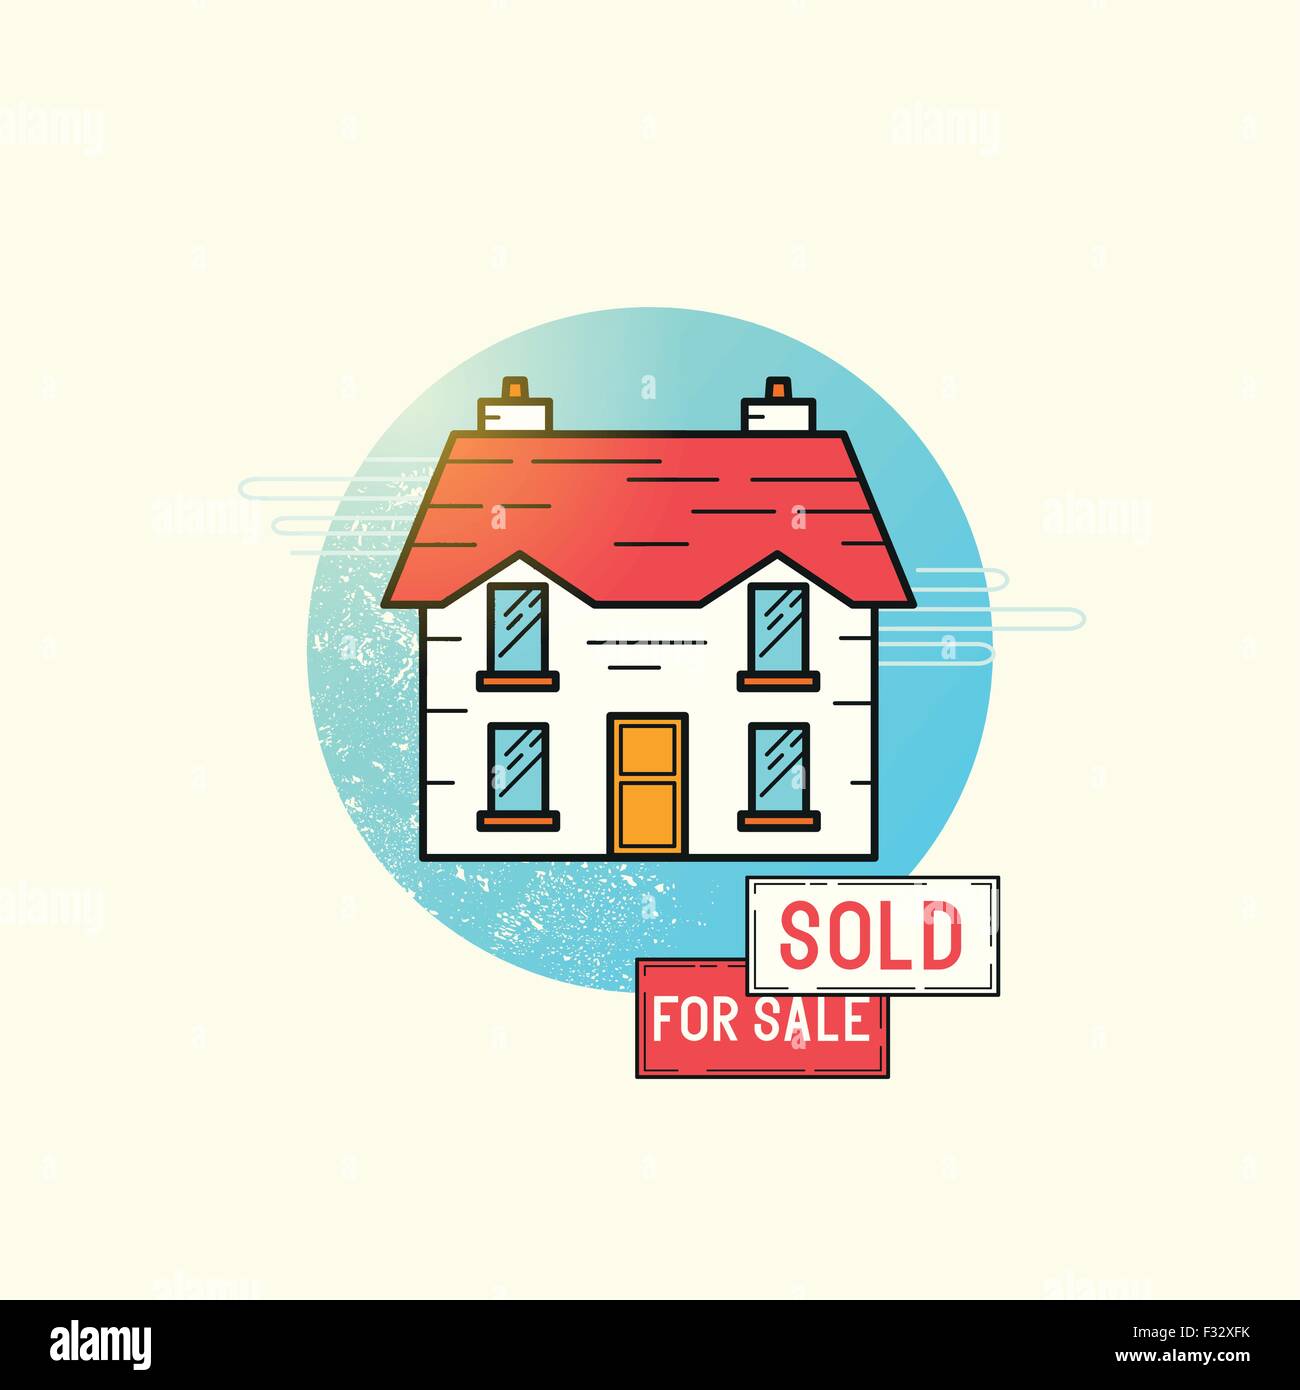 Home-Symbol Vektor verschieben. Ein freistehendes Haus mit zum Verkauf und verkauften Ortstafeln. Vektor-illustration Stock Vektor